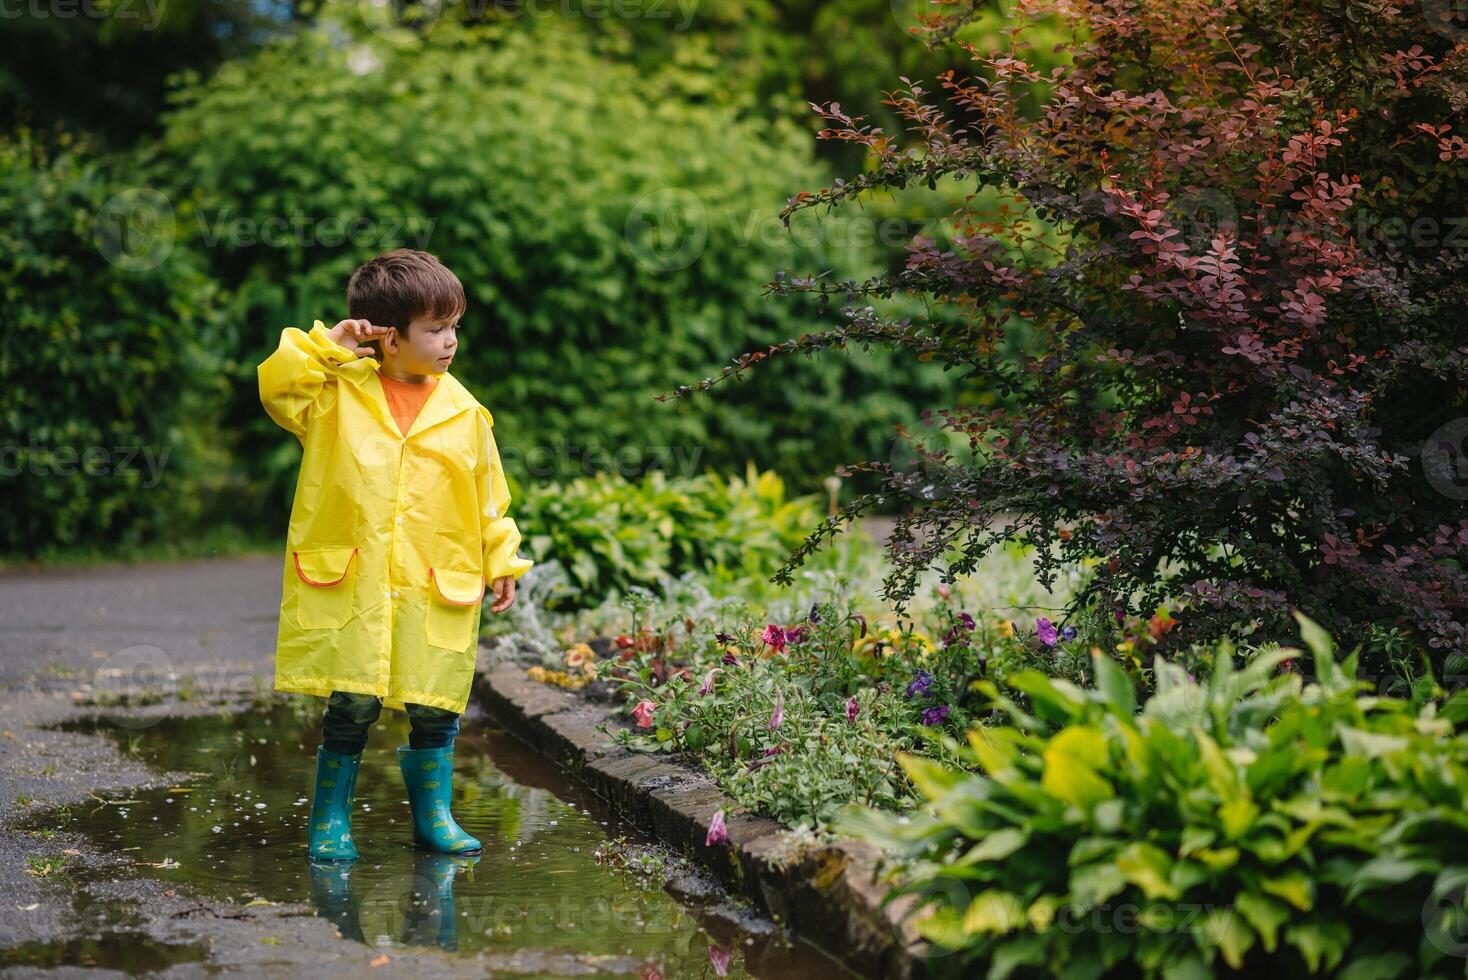 liten pojke spelar i regnig sommar parkera. barn med paraply, vattentät täcka och stövlar Hoppar i pöl och lera i de regn. unge gående i sommar regn utomhus- roligt förbi några väder. Lycklig barndom. foto